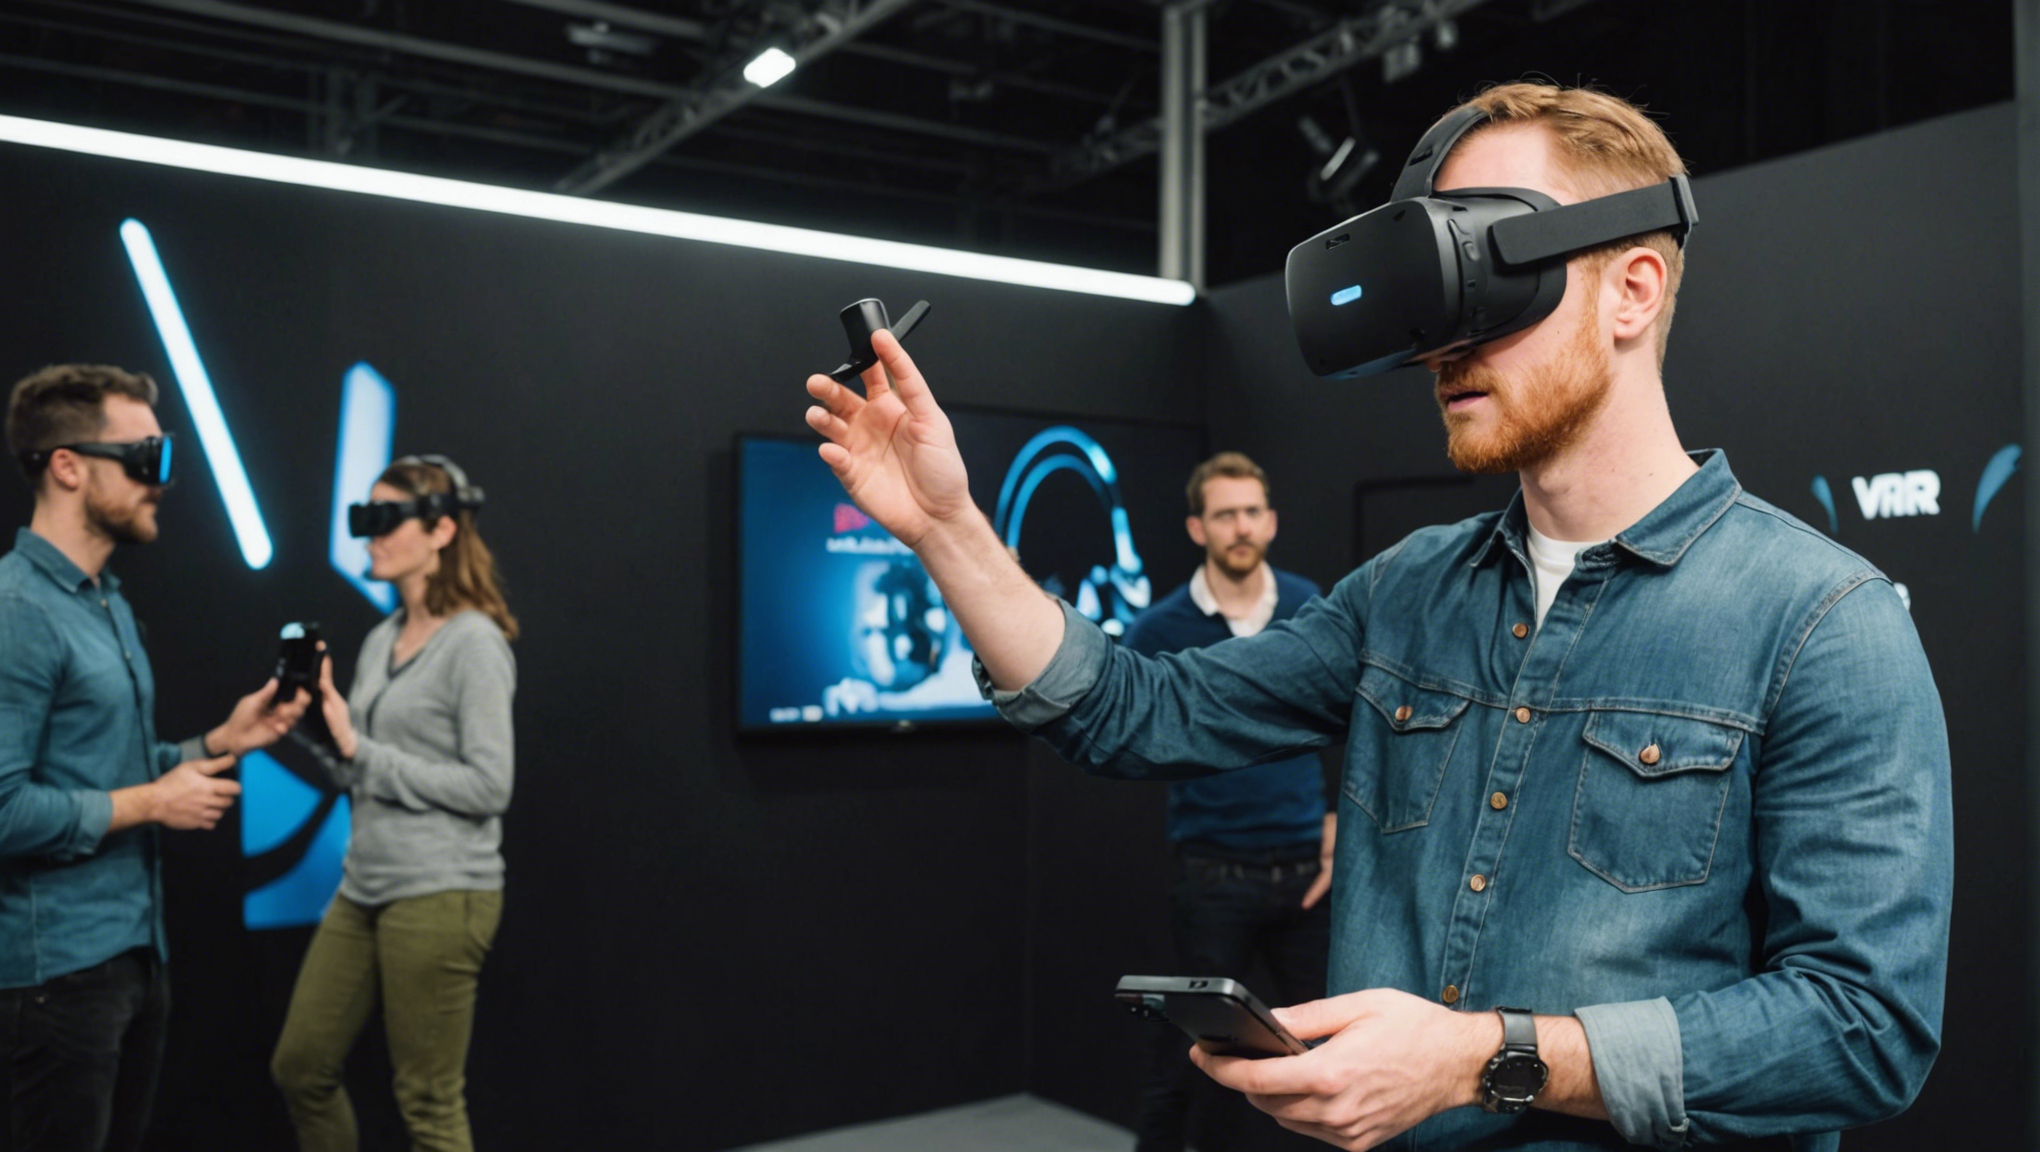 découvrez les meilleures attractions à visiter lors d'une animation de réalité virtuelle à lille pour une expérience inoubliable.